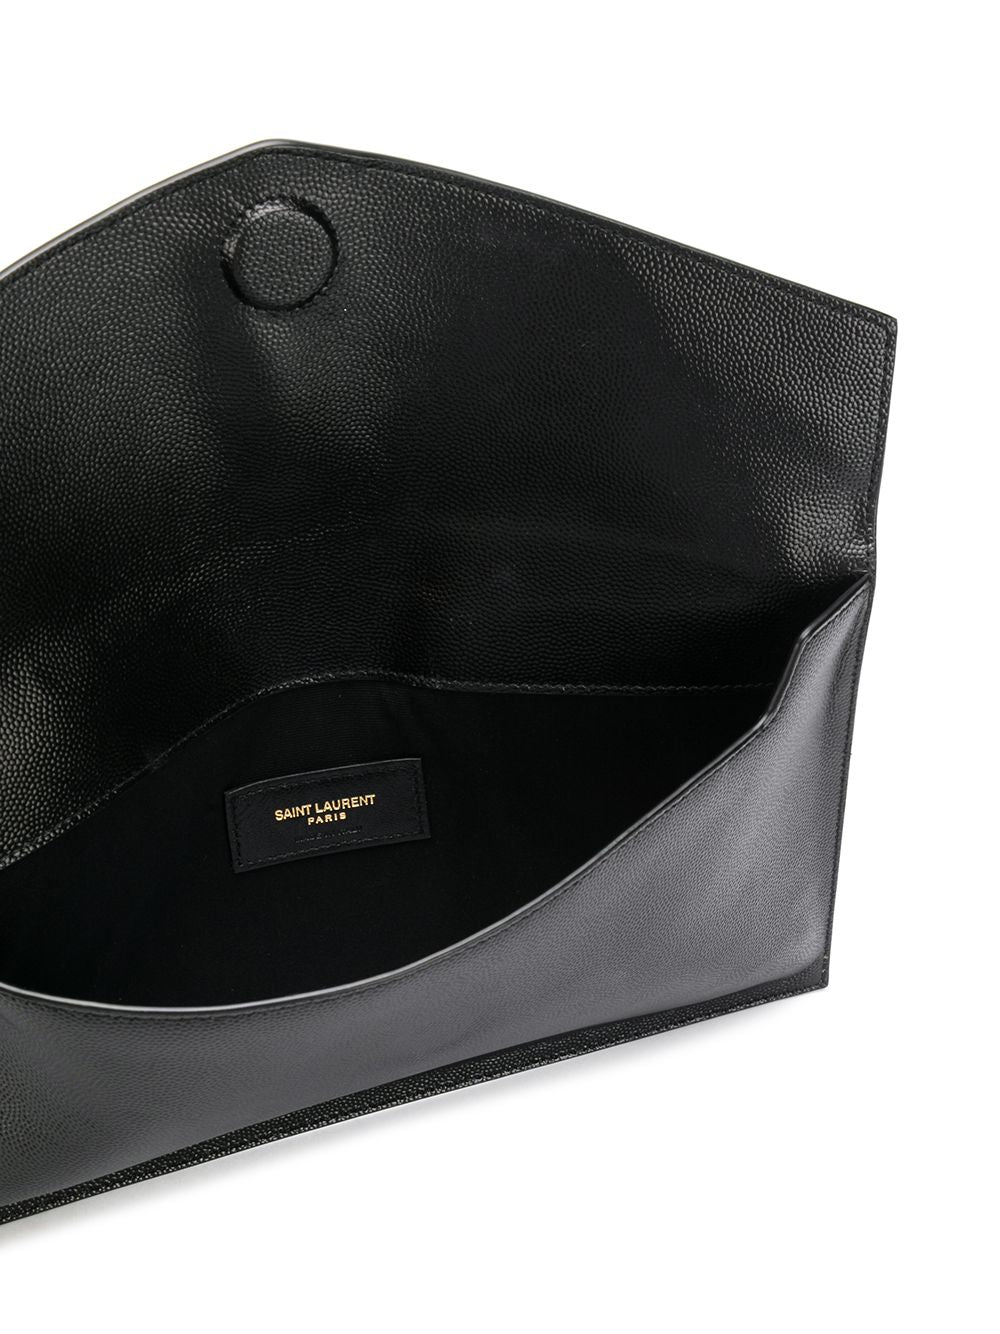 Saint Laurent Leather Uptown Clutch Bag